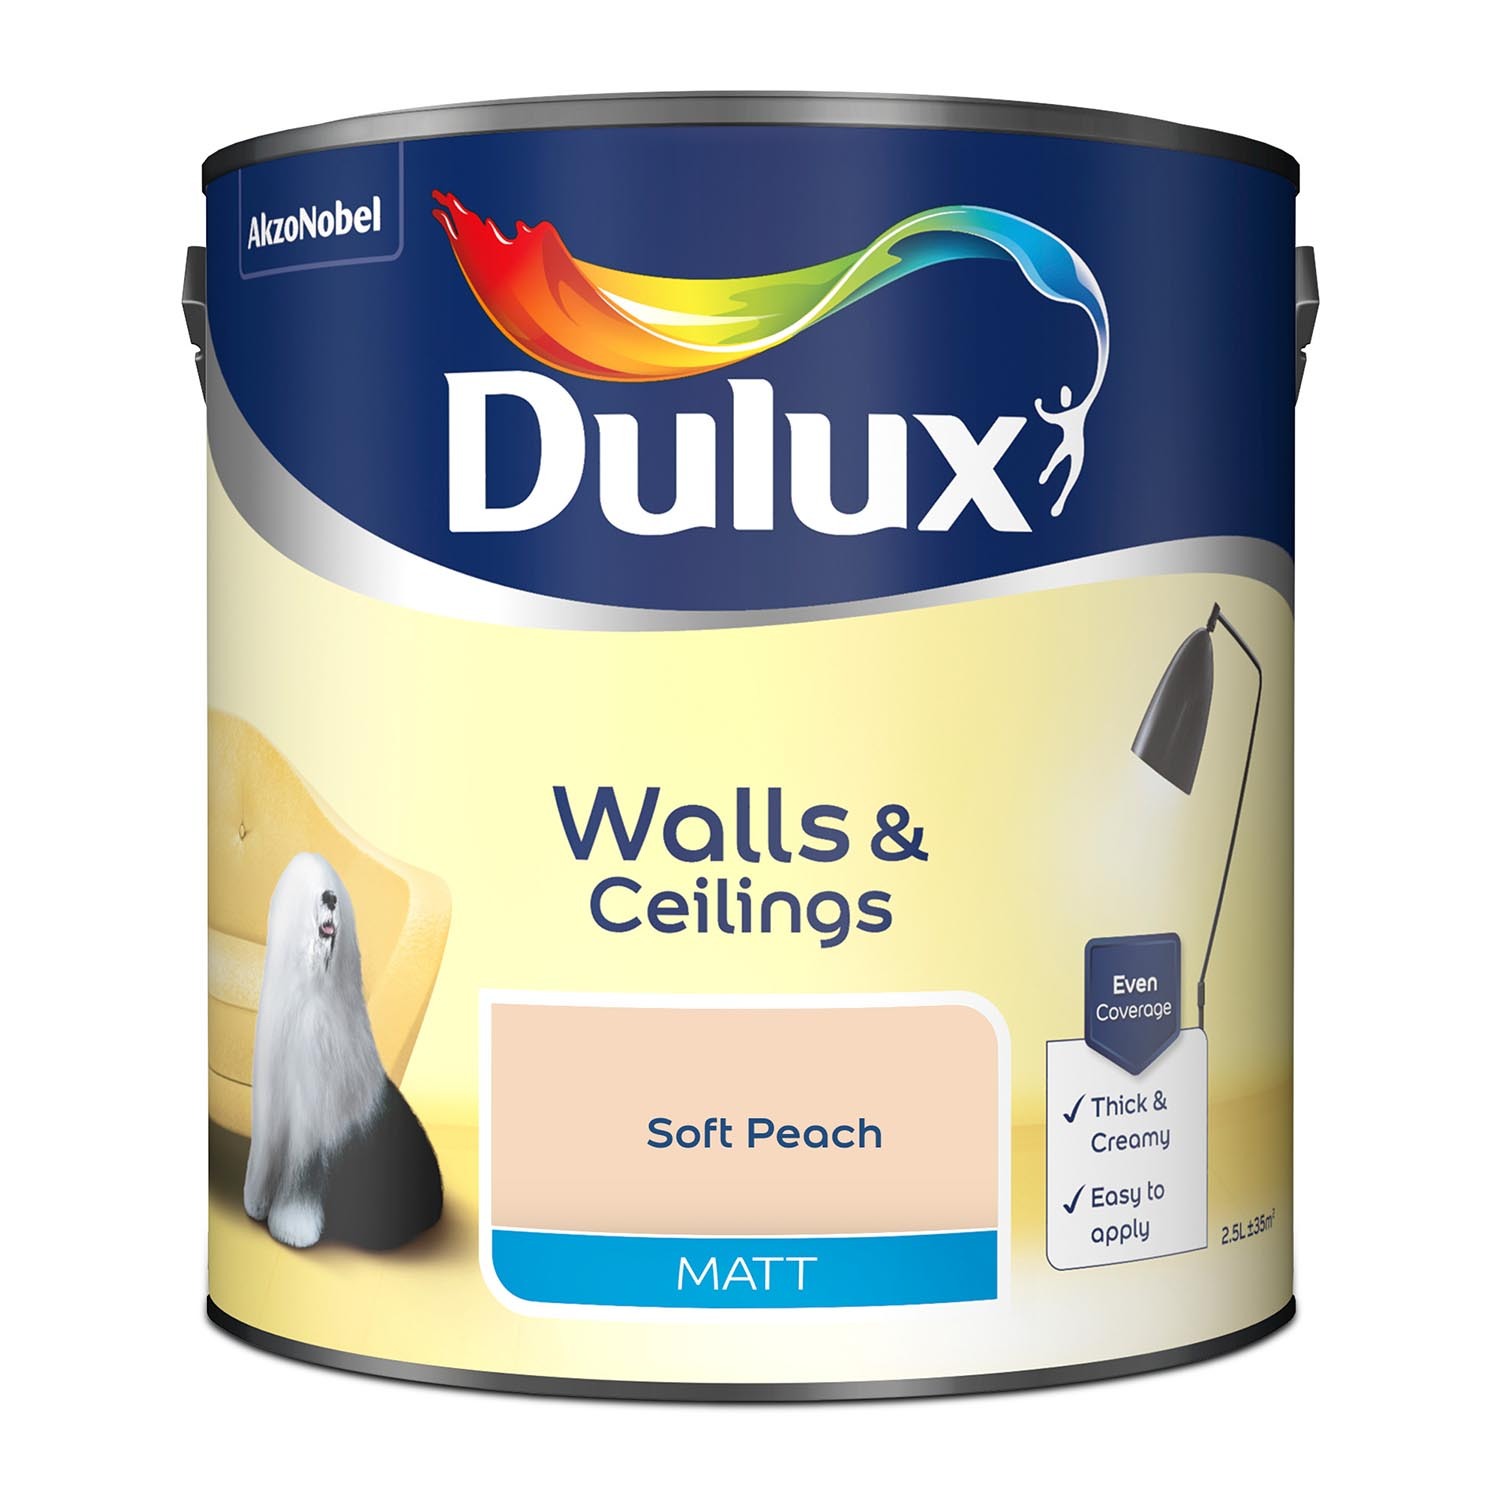 Dulux Walls & Ceilings Soft Peach Matt Emulsion Paint 2.5L Image 2